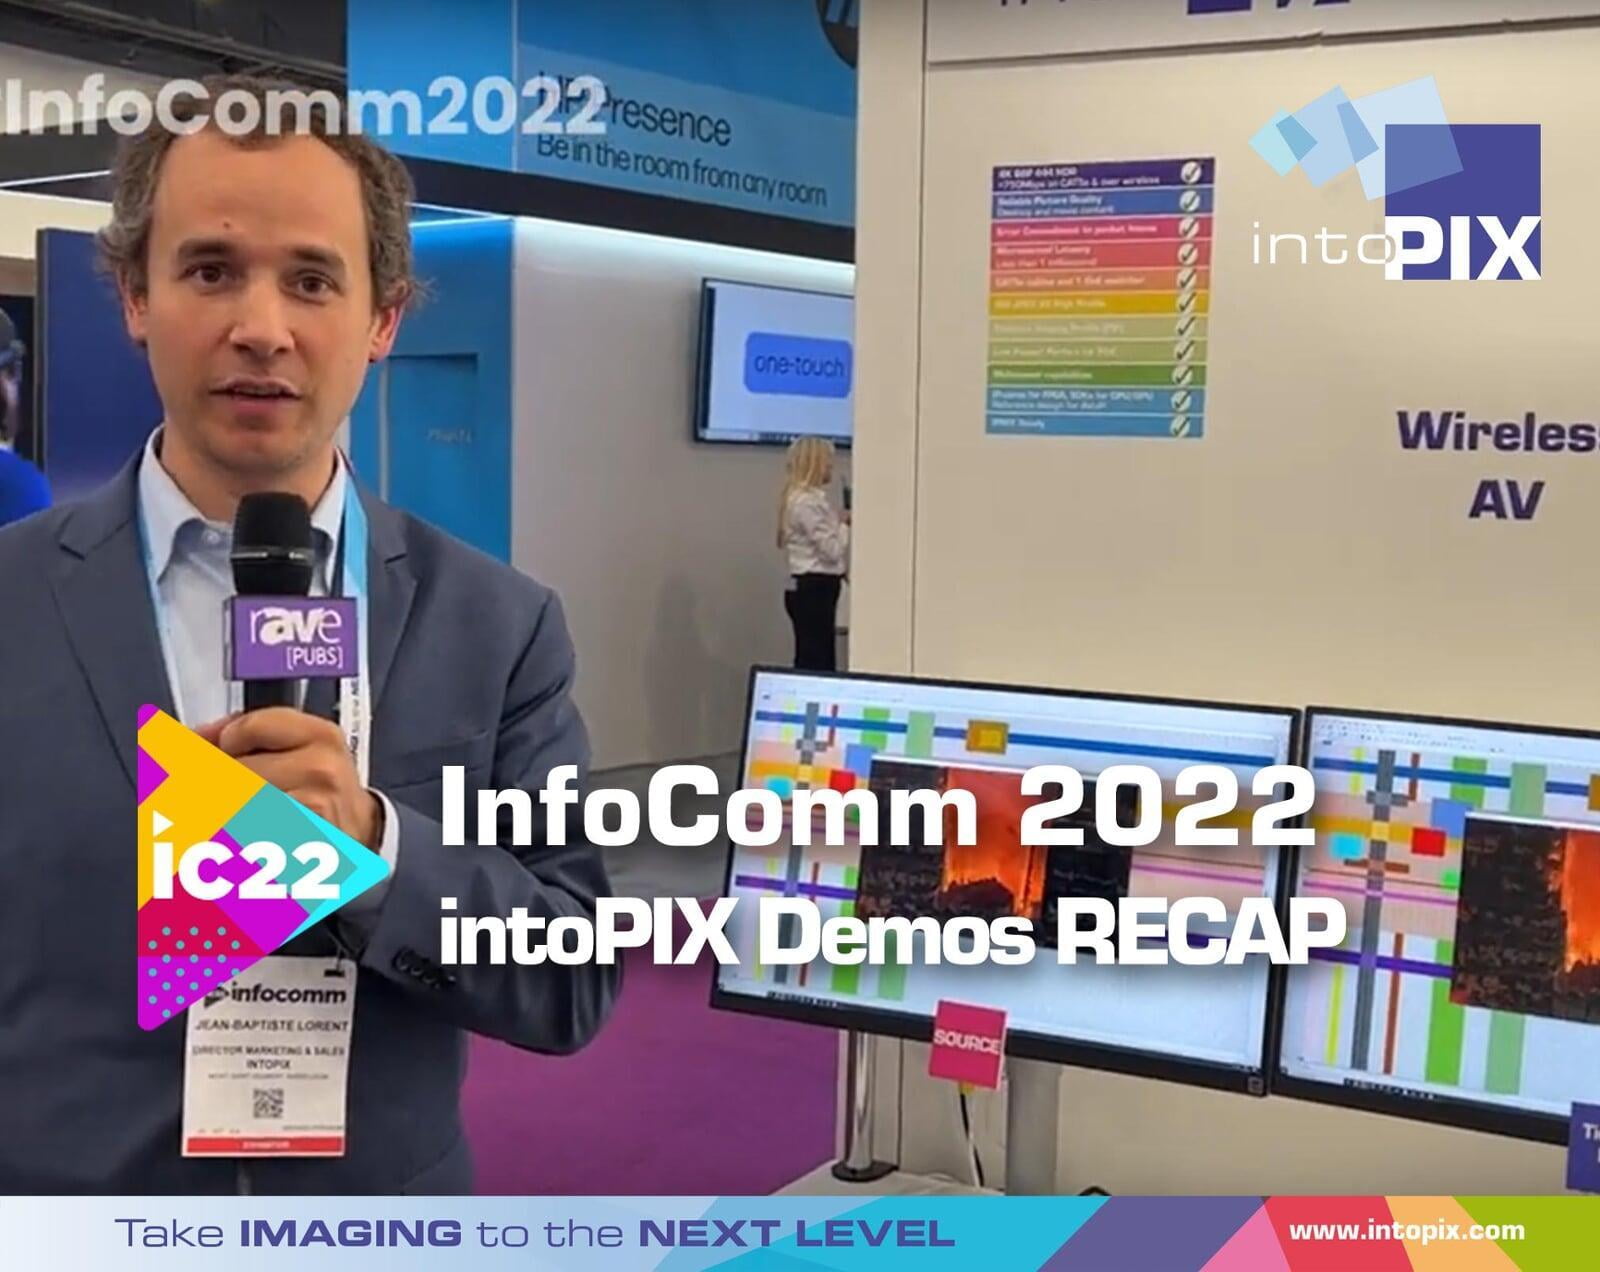 TicoXS FIP獲獎 Infocomm 2022 !什麼的回顧 intoPIX 提出！